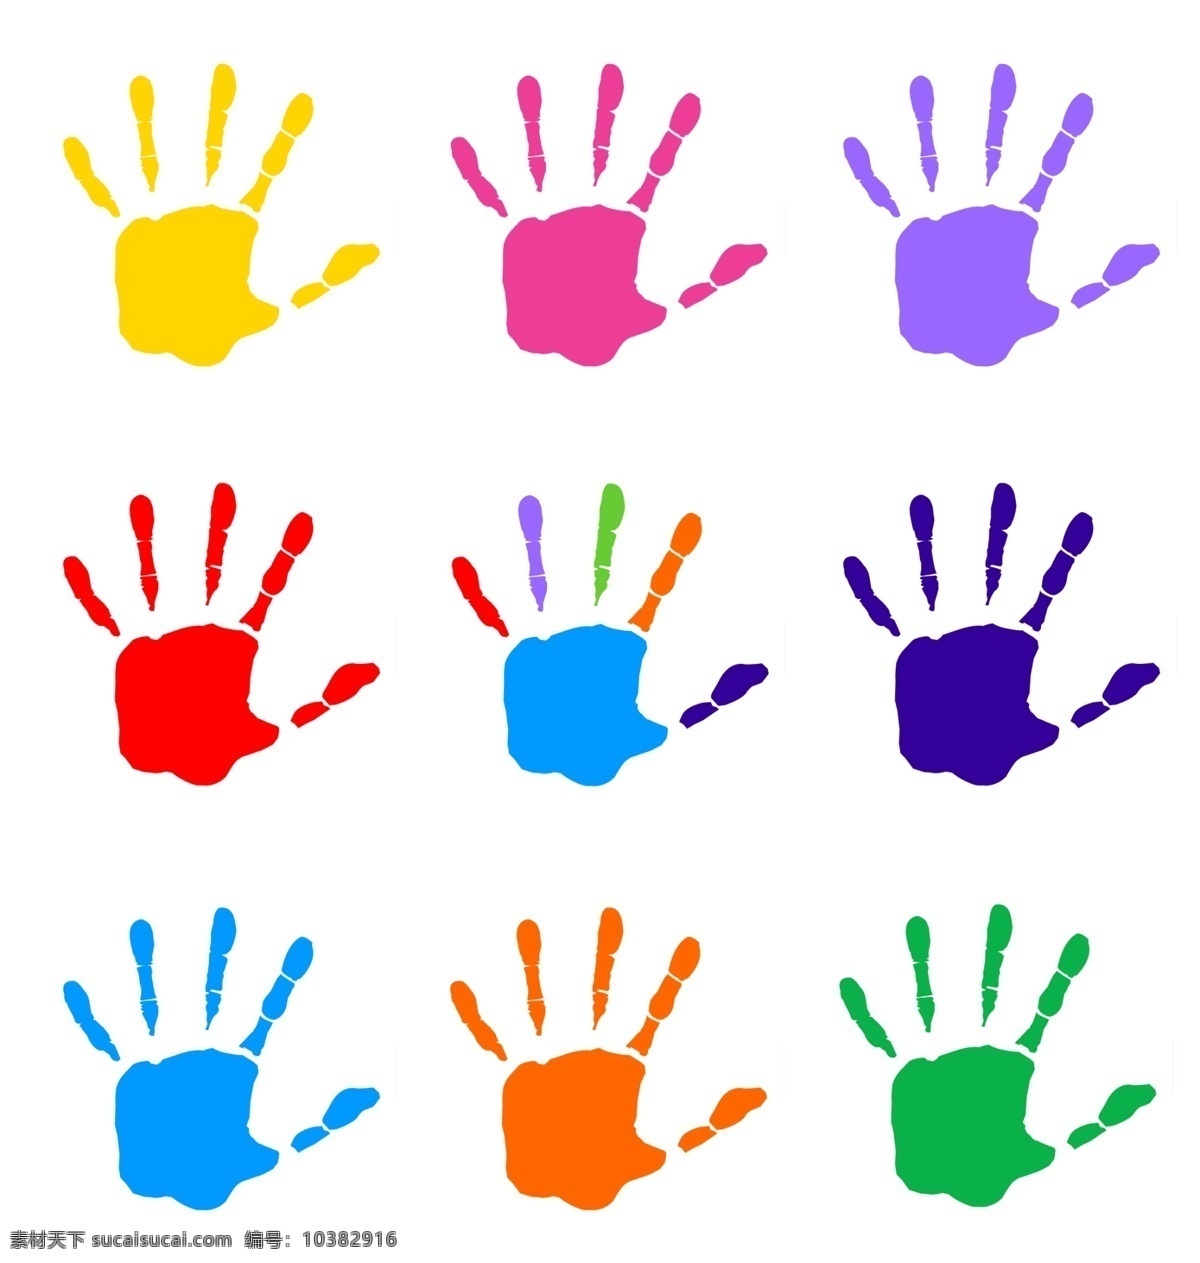 彩色手印 卡通手印 手印素材 手掌 彩色手掌 手掌素材 卡通手掌